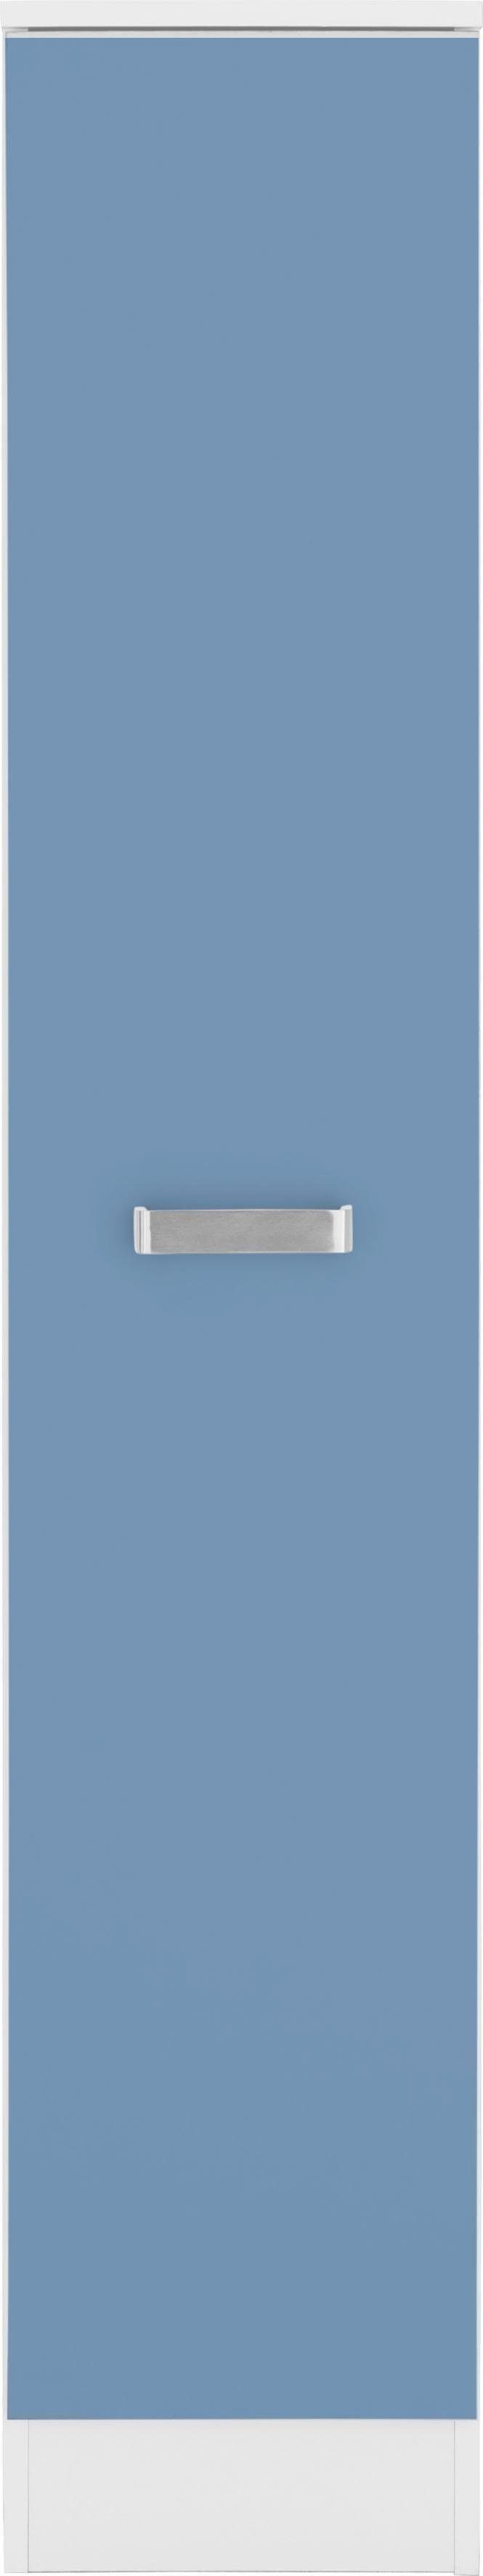 wiho Küchen Apothekerschrank Husum Auszug mit 4 Ablagefächern himmelblau/weiß